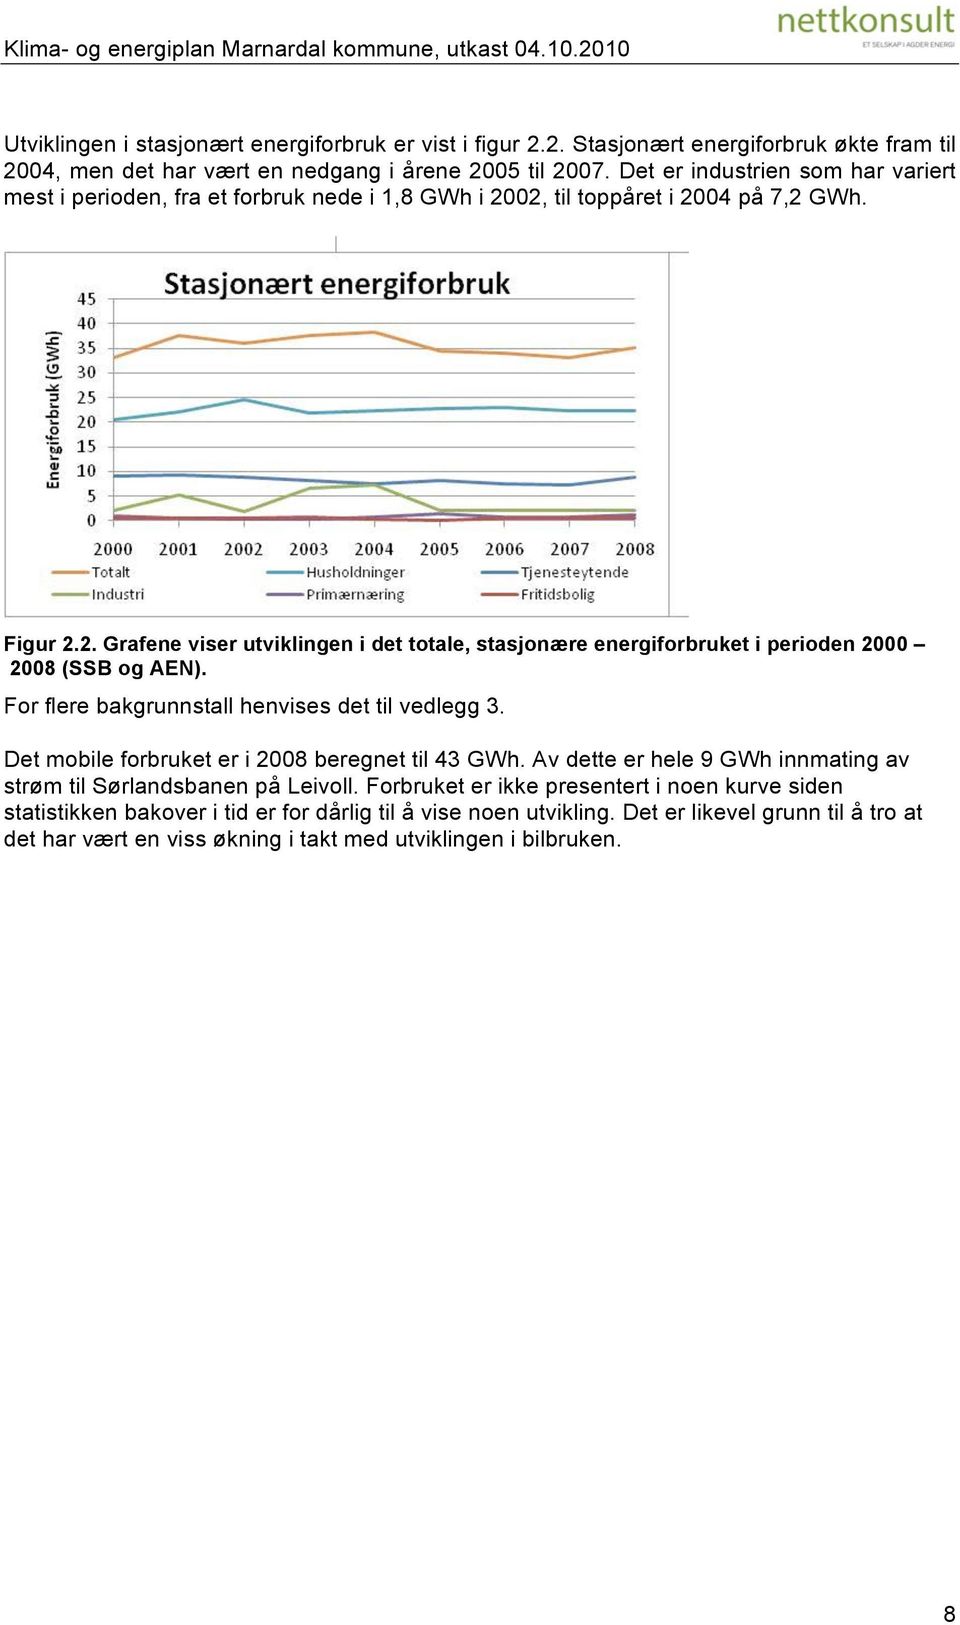 For flere bakgrunnstall henvises det til vedlegg 3. Det mobile forbruket er i 2008 beregnet til 43 GWh. Av dette er hele 9 GWh innmating av strøm til Sørlandsbanen på Leivoll.